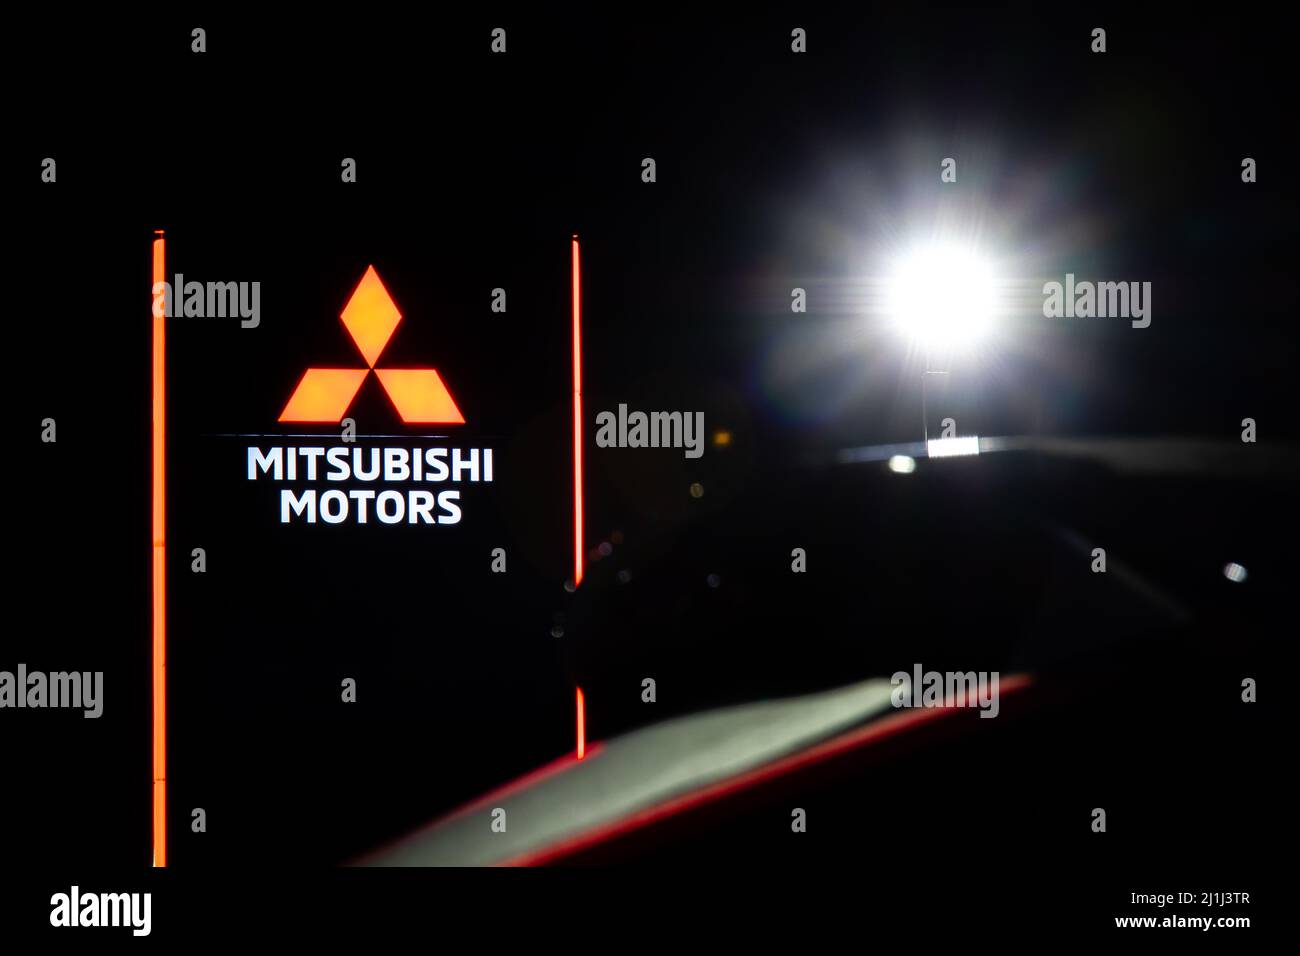 The Mitsubishi Motors logo is illuminated on the main sign at a newly constructed Mitsubishi car dealership at night. Stock Photo